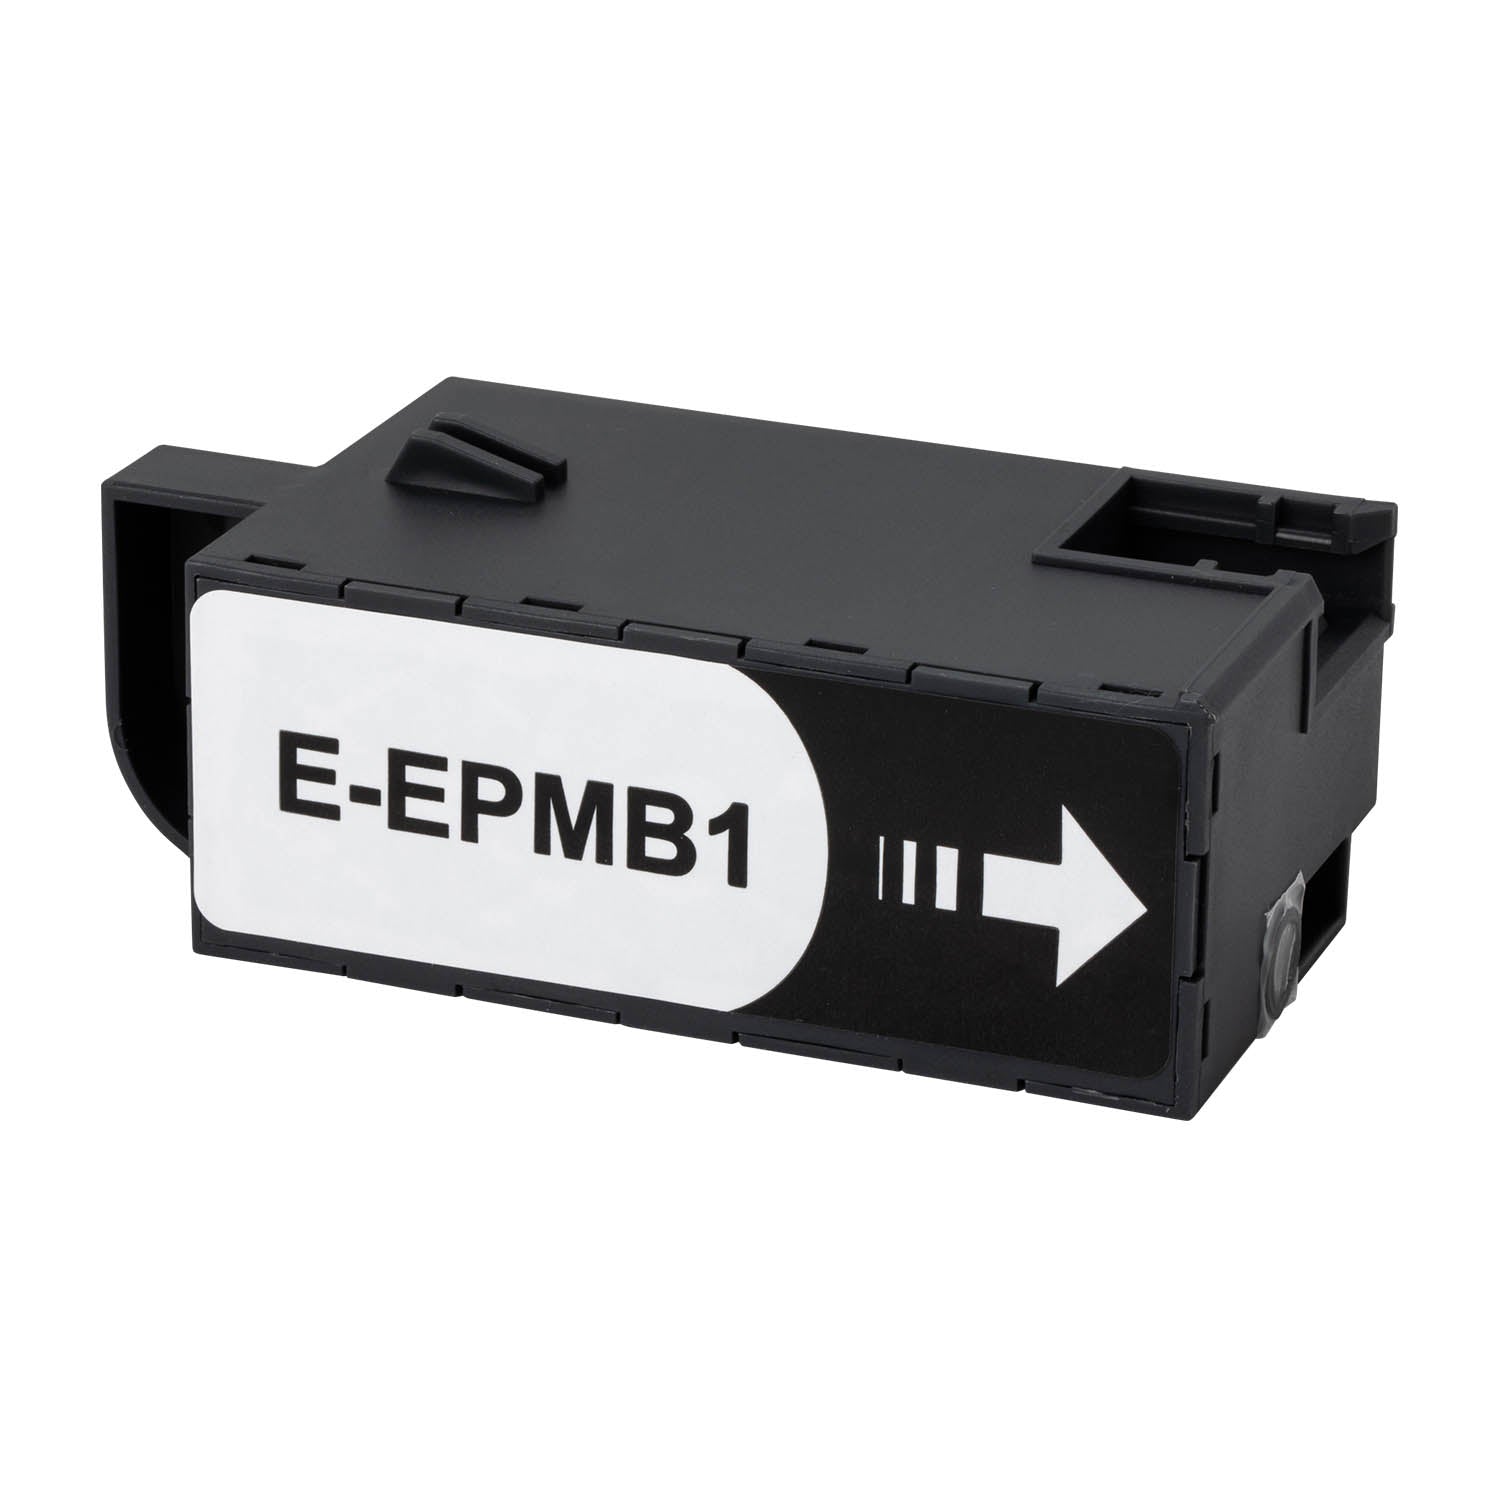 推奨 EPSON用 エプソン用 E-EPXMB3 互換メンテナンスボックス